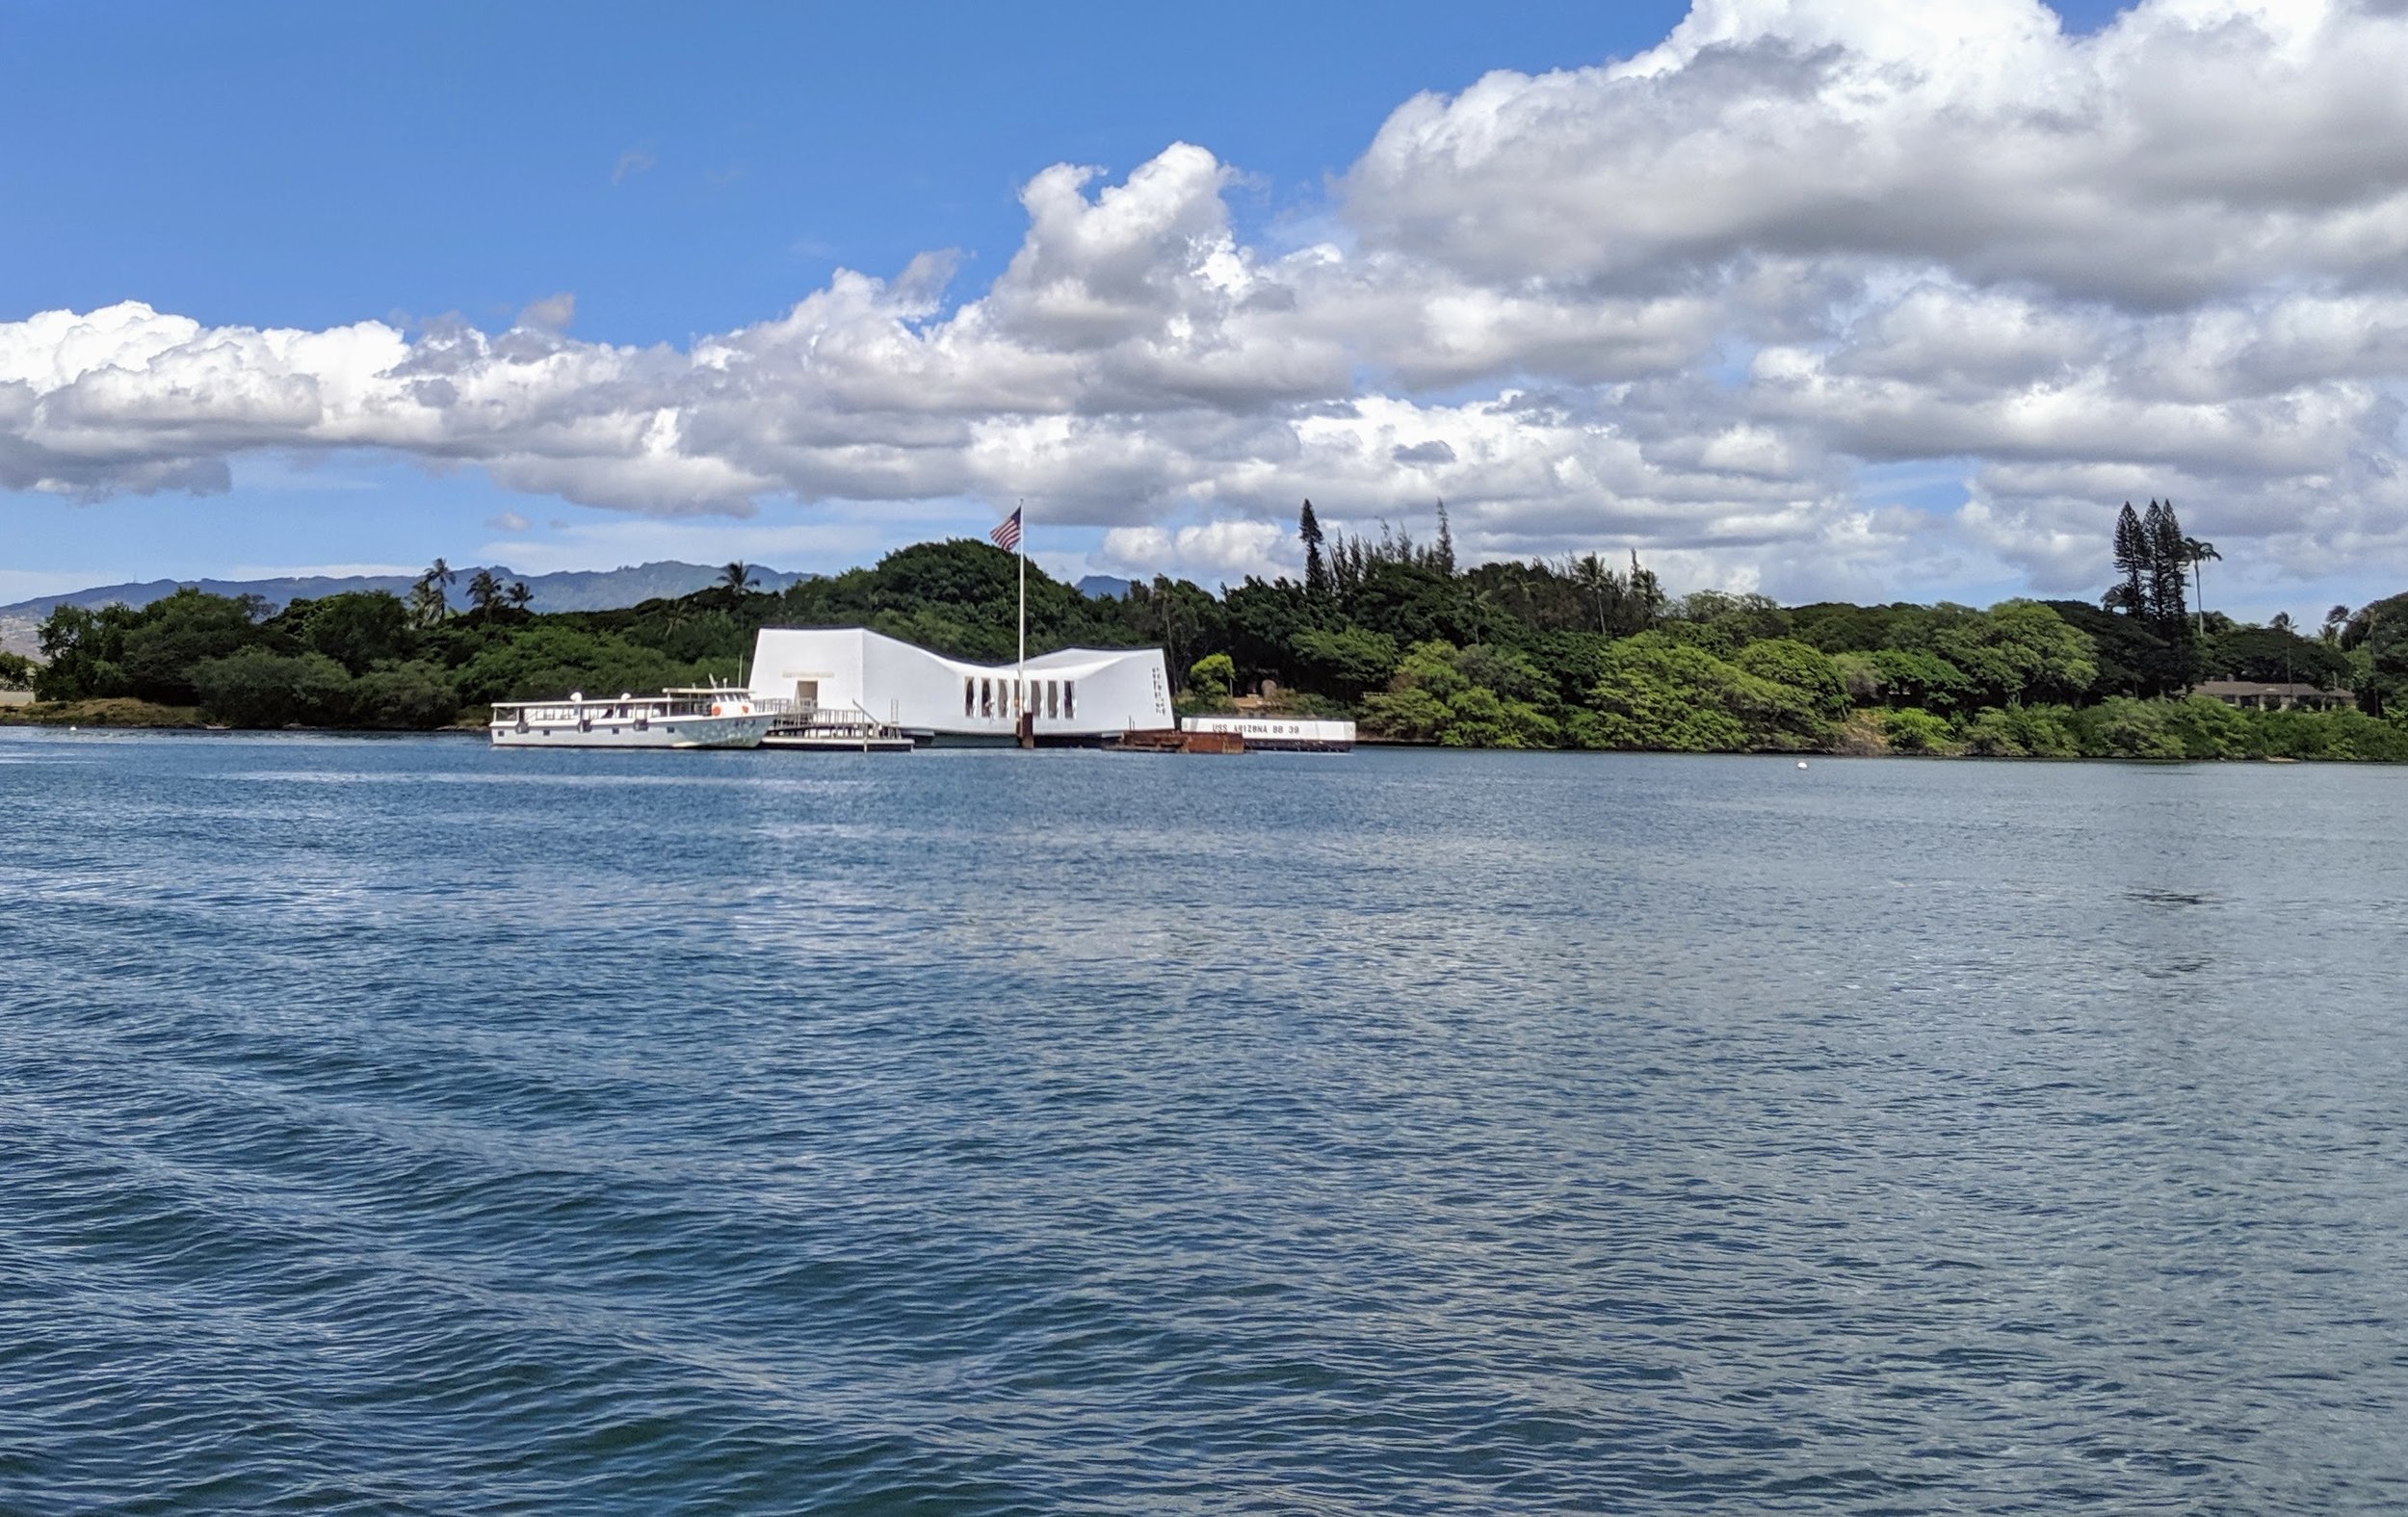  USS Arizona Memorial at Pearl Harbor 